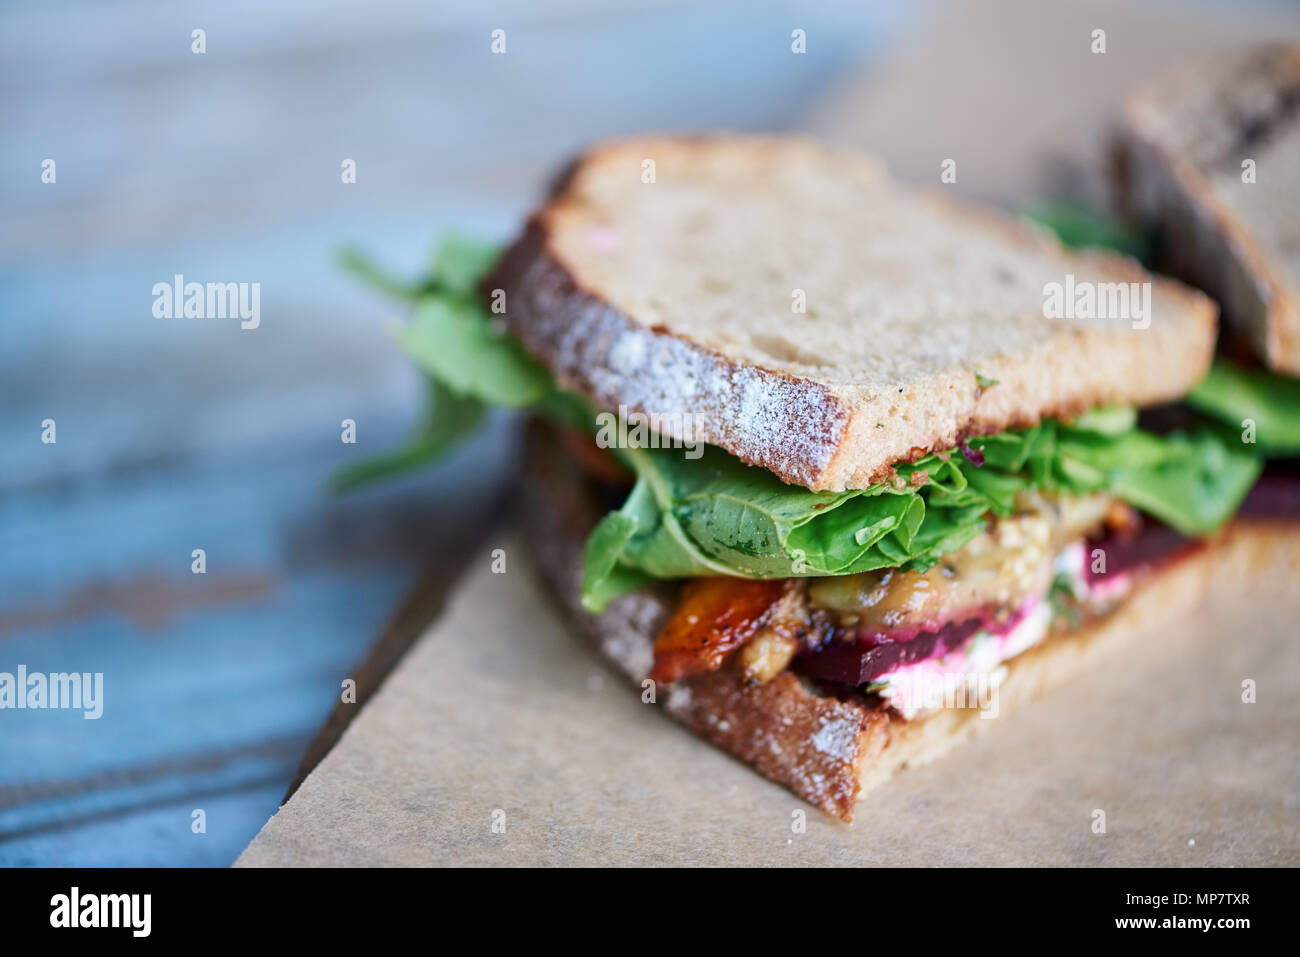 Artisinal delizioso sandwich di verdure miste su un tavolo di legno Foto Stock